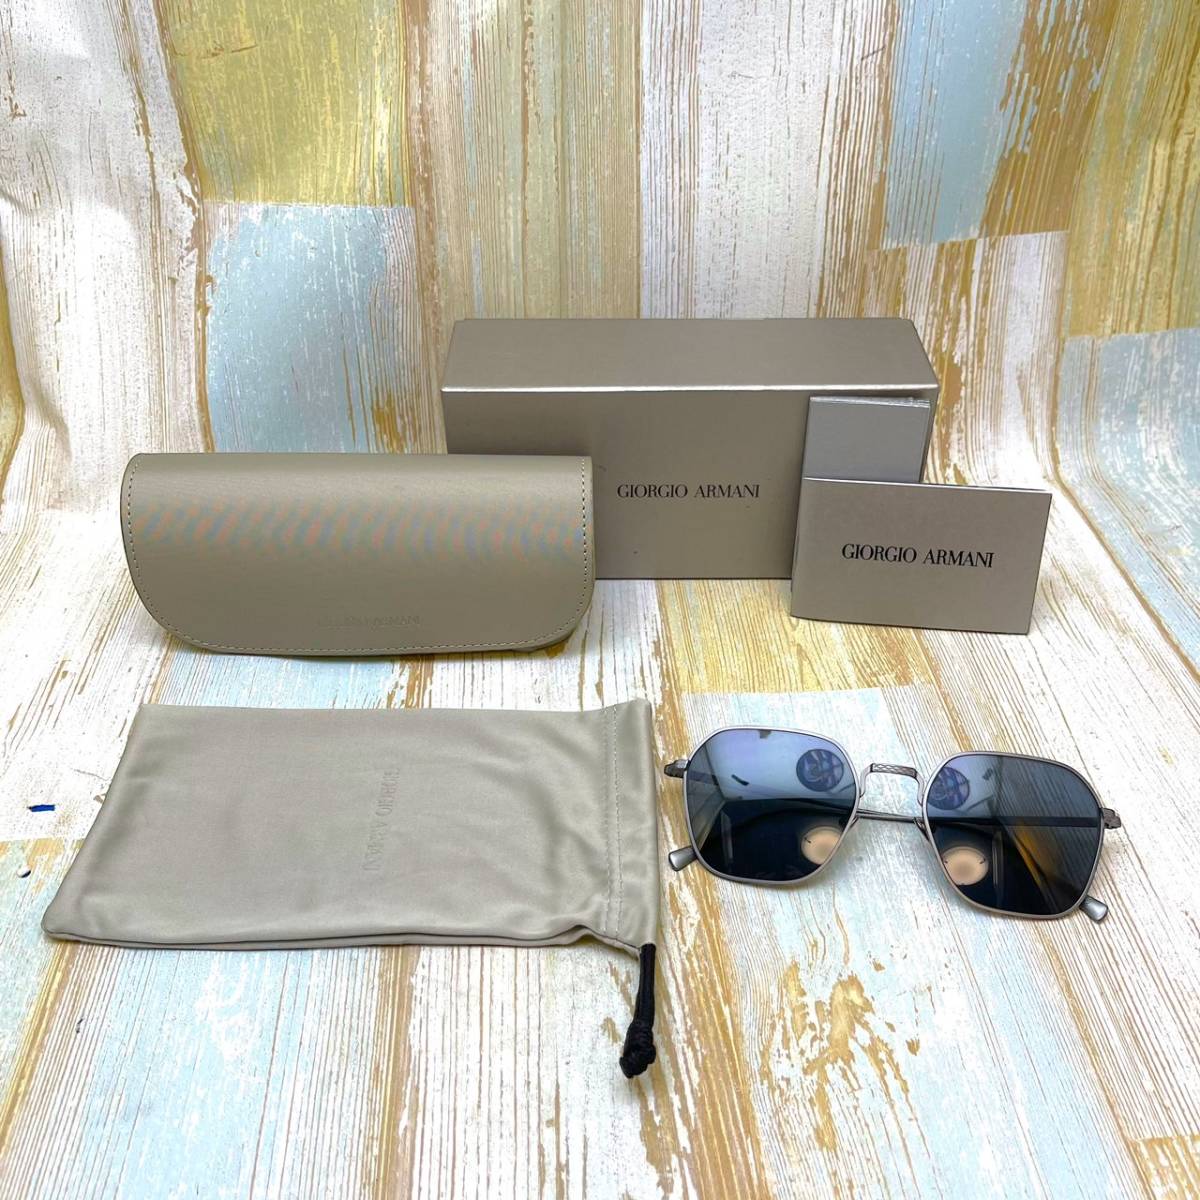  стандартный товар новый товар *GIORGIO ARMANIjoru geo Armani * солнцезащитные очки gray silver очки * с футляром 